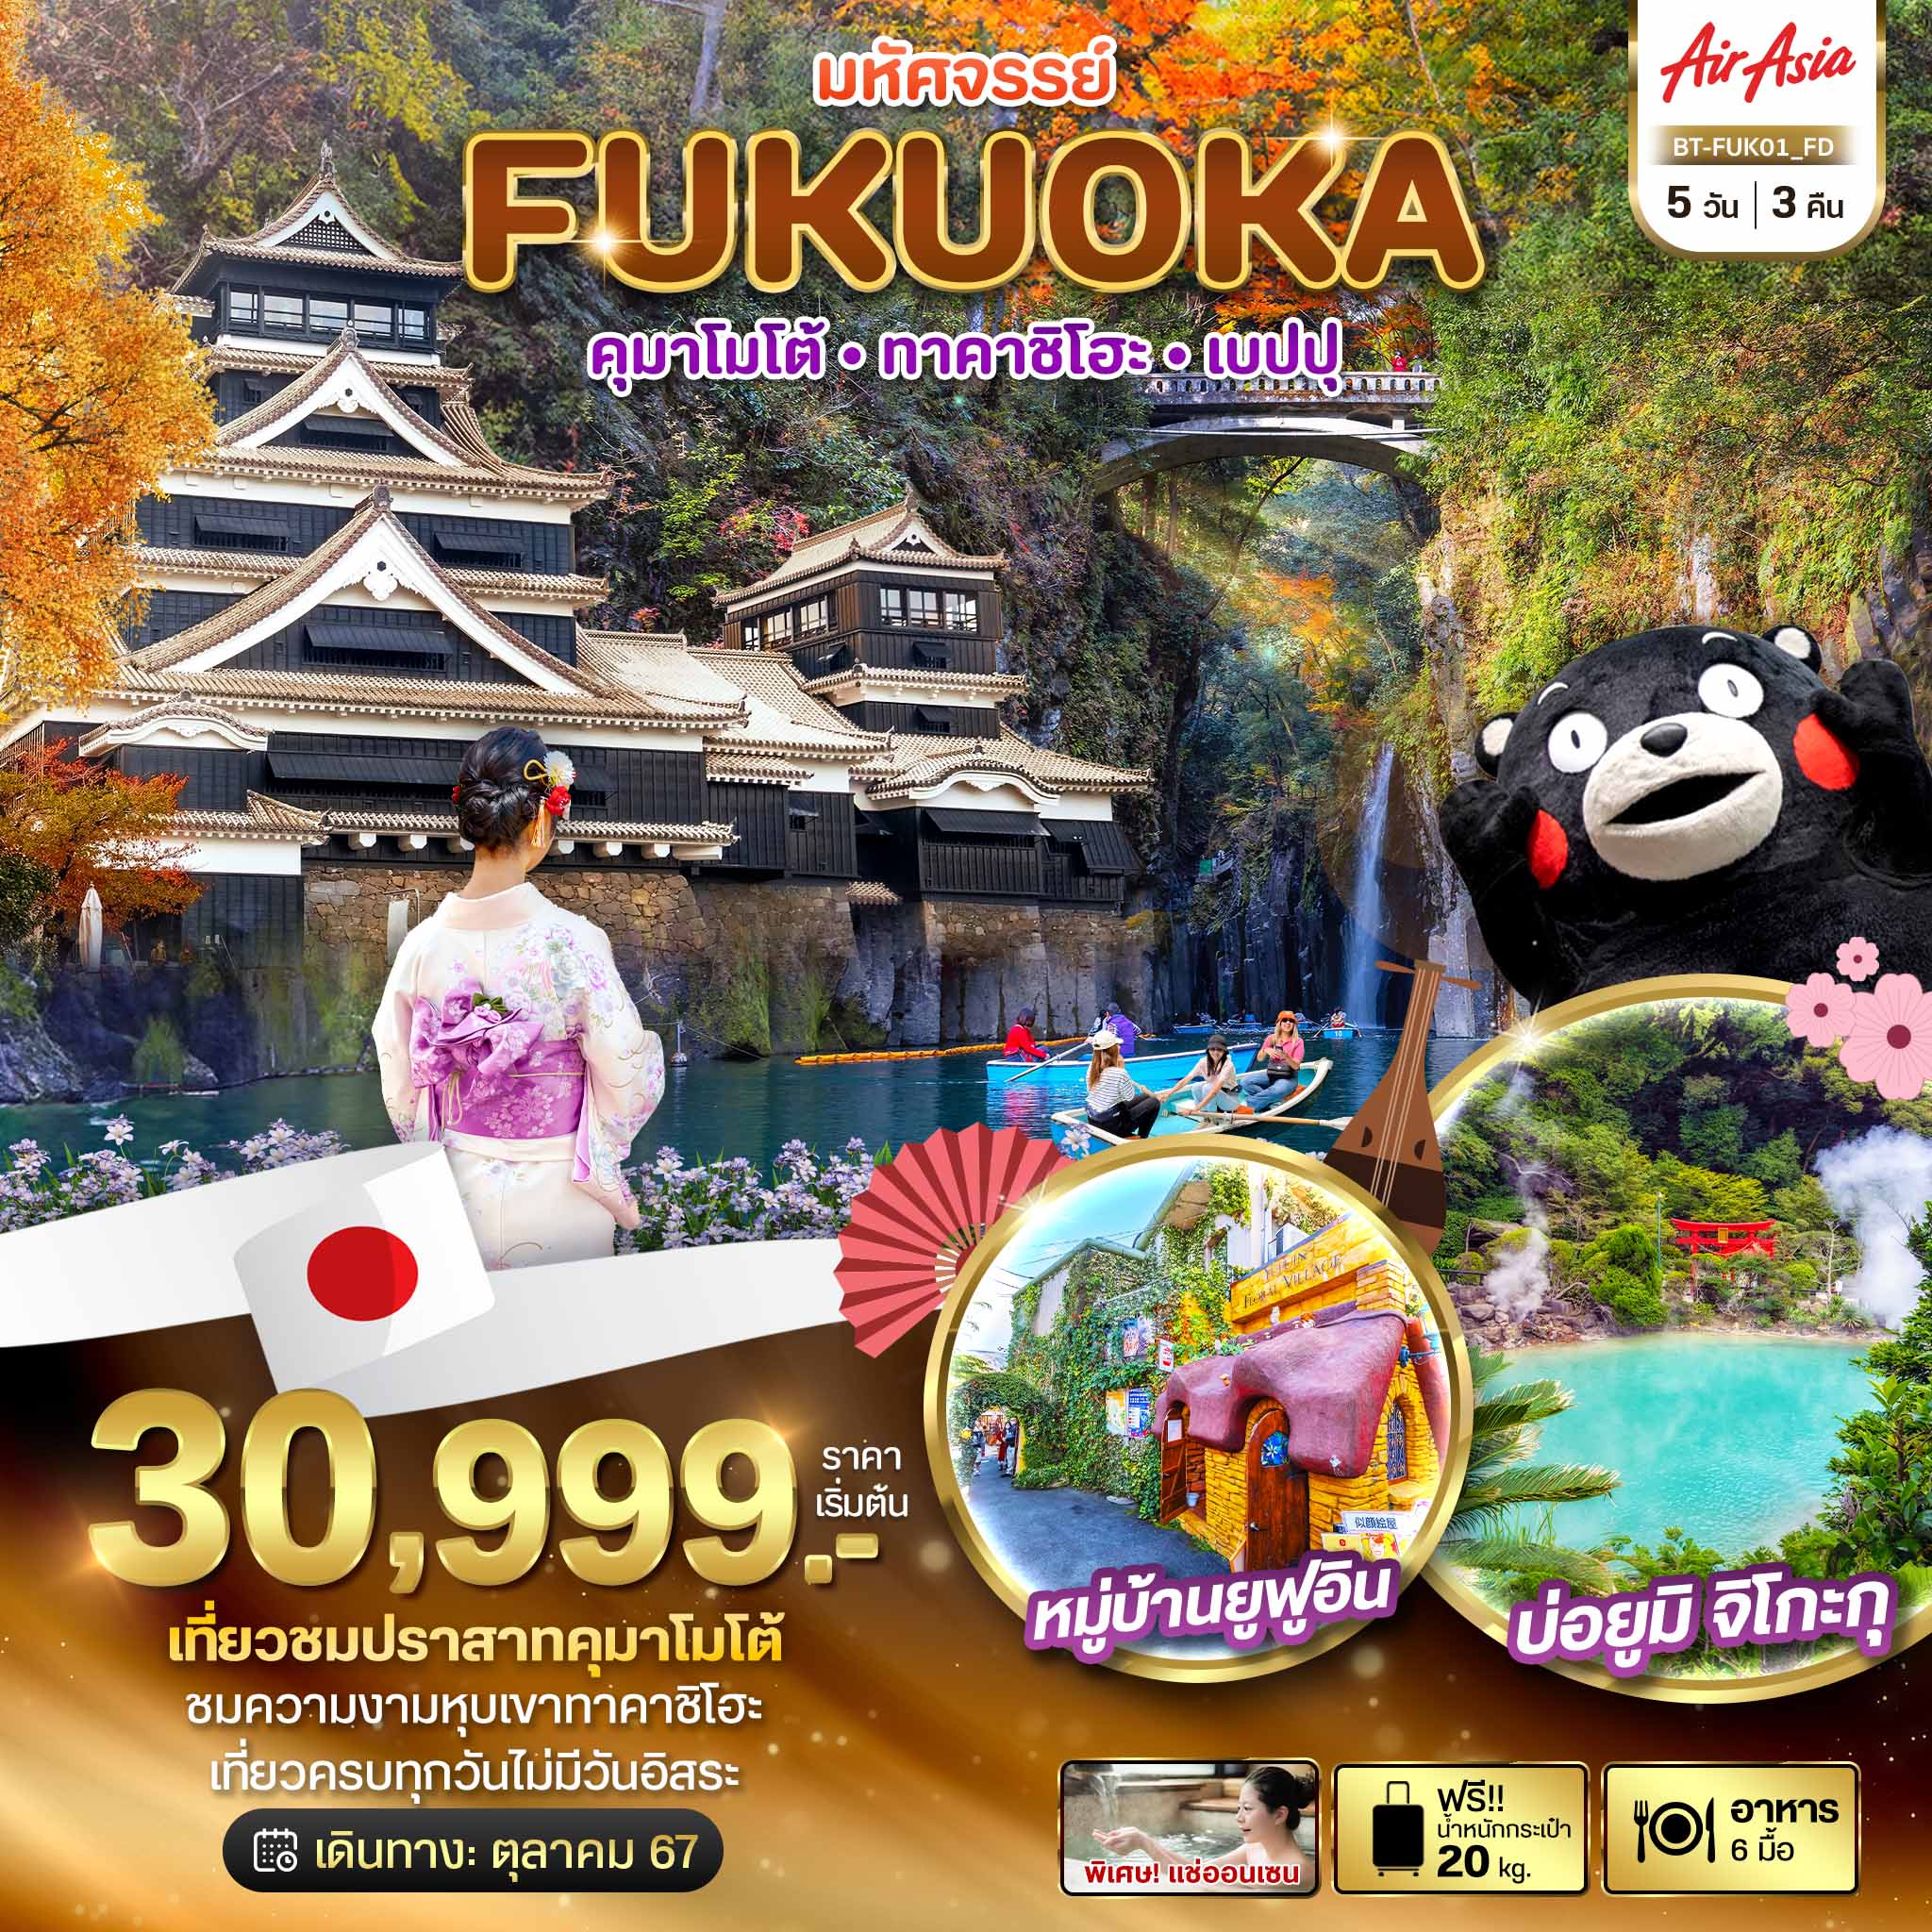 FUKUOKA ฟุกุโอกะ คุมาโมโต้ ทาคาชิโฮะ เบปปุ 5 วัน 3 คืน เดินทาง ตุลาคม 67 เริ่มต้น 30,999.- Air Asia (FD)